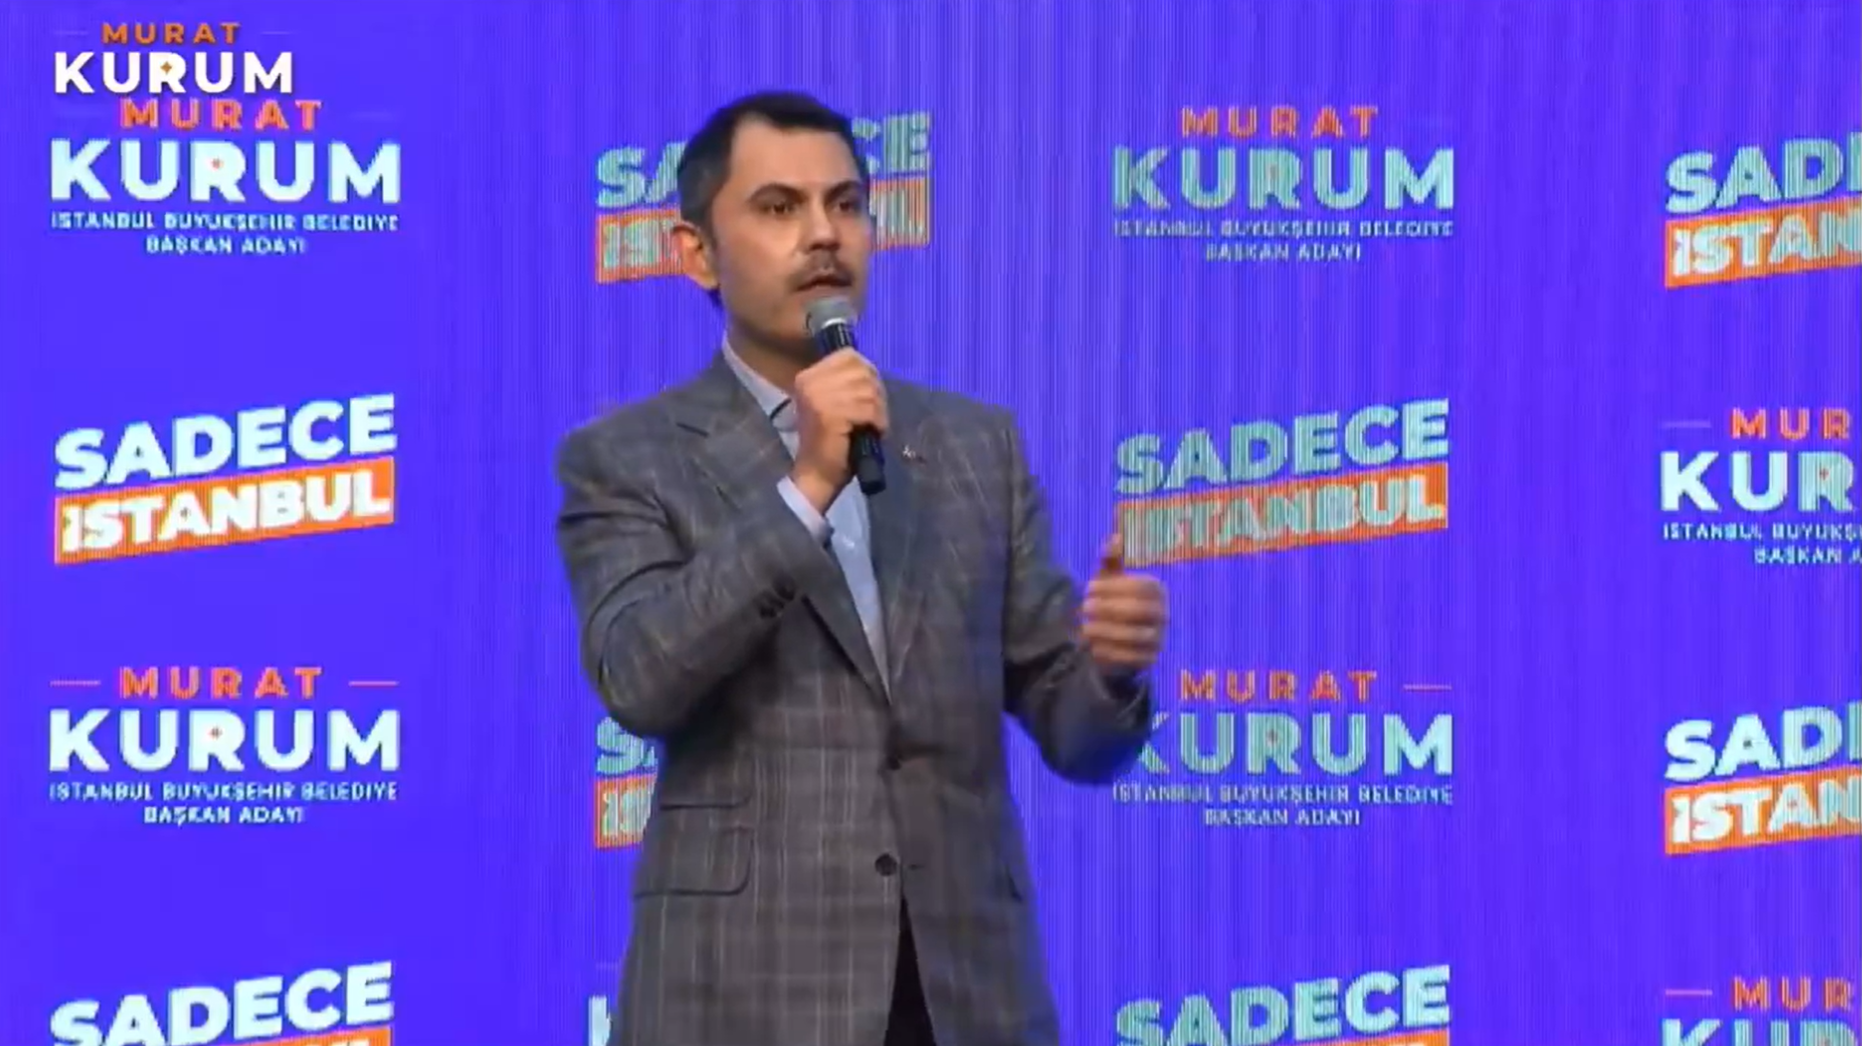 AKP'nin İstanbul adayı Murat Kurum, Ekrem İmamoğlu'na bakanlık göndermesinde bulundu: Seni alsalar alsalar köfteci olarak alırlar